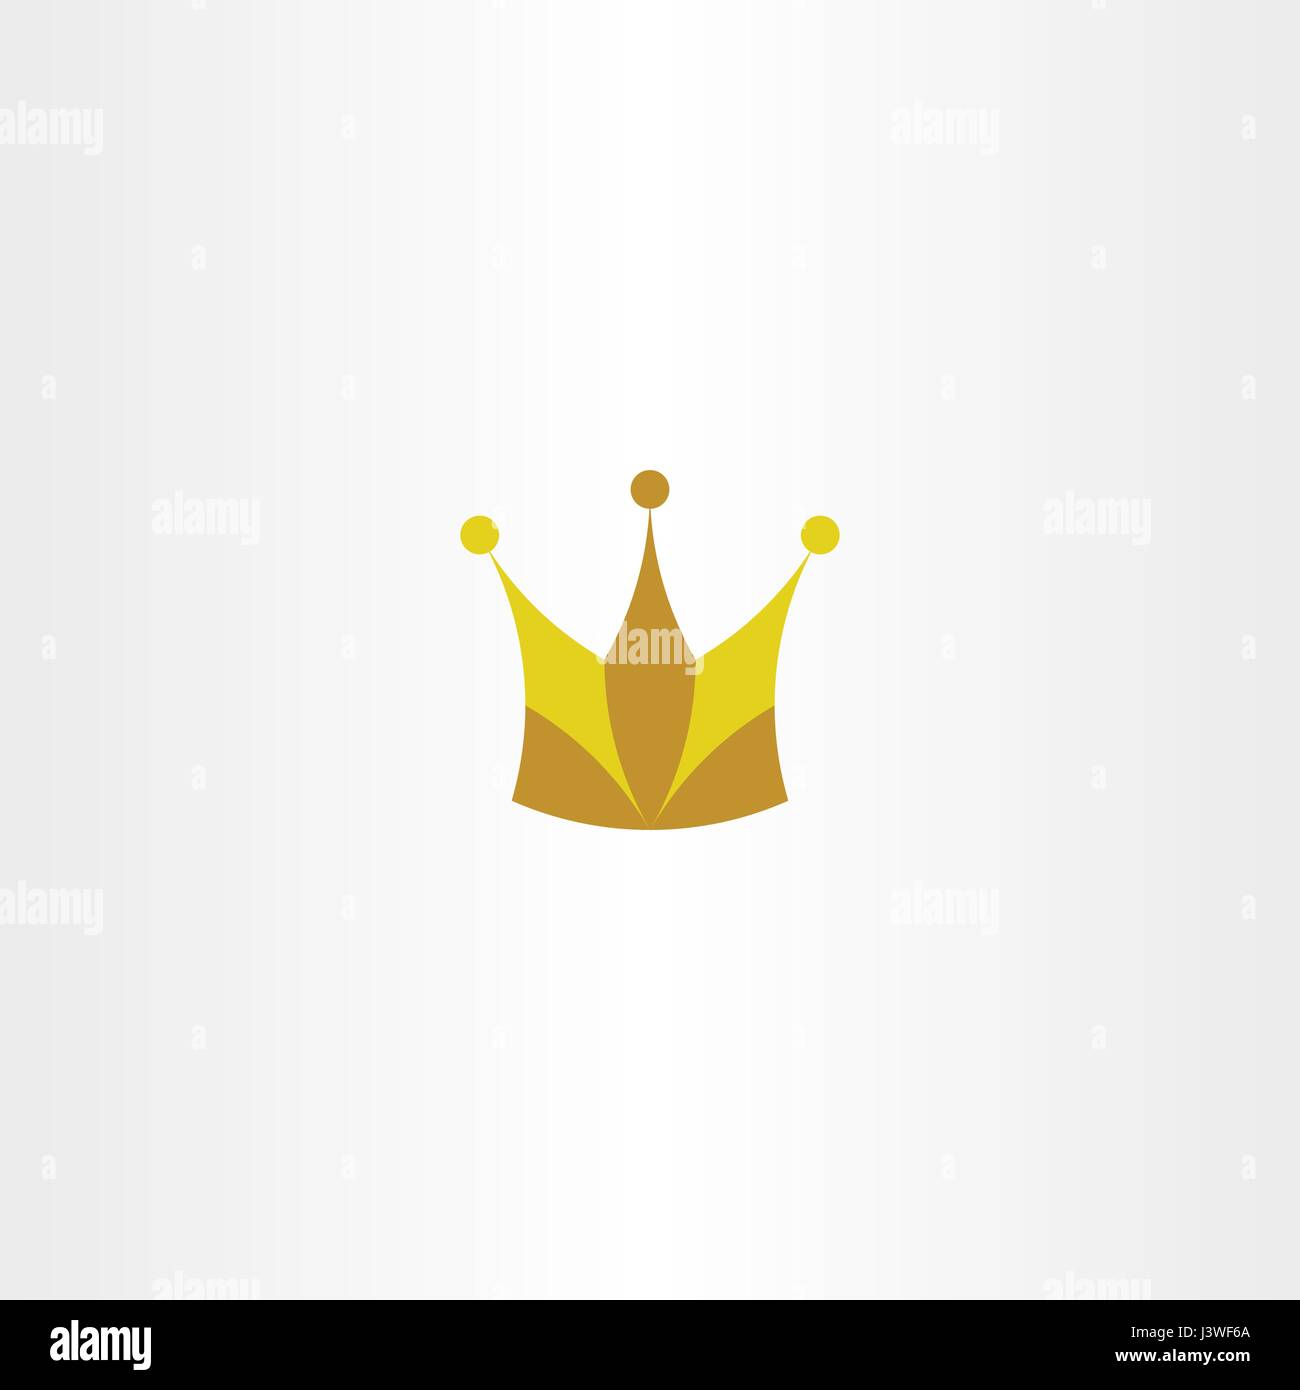 king crown logo vector icon symbol design Stock Vector